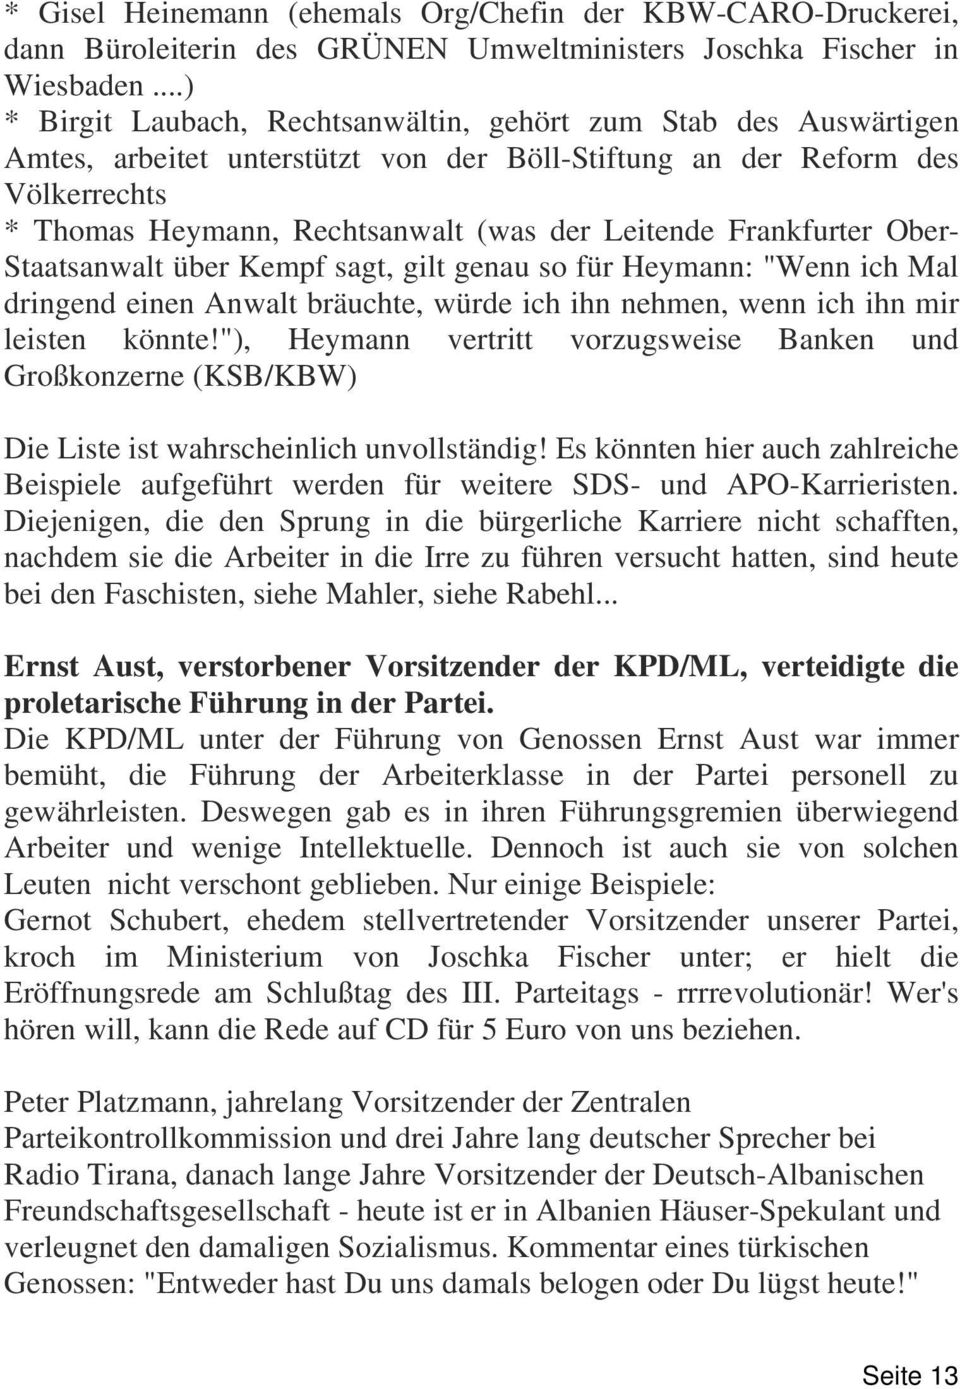 Frankfurter Ober- Staatsanwalt über Kempf sagt, gilt genau so für Heymann: "Wenn ich Mal dringend einen Anwalt bräuchte, würde ich ihn nehmen, wenn ich ihn mir leisten könnte!